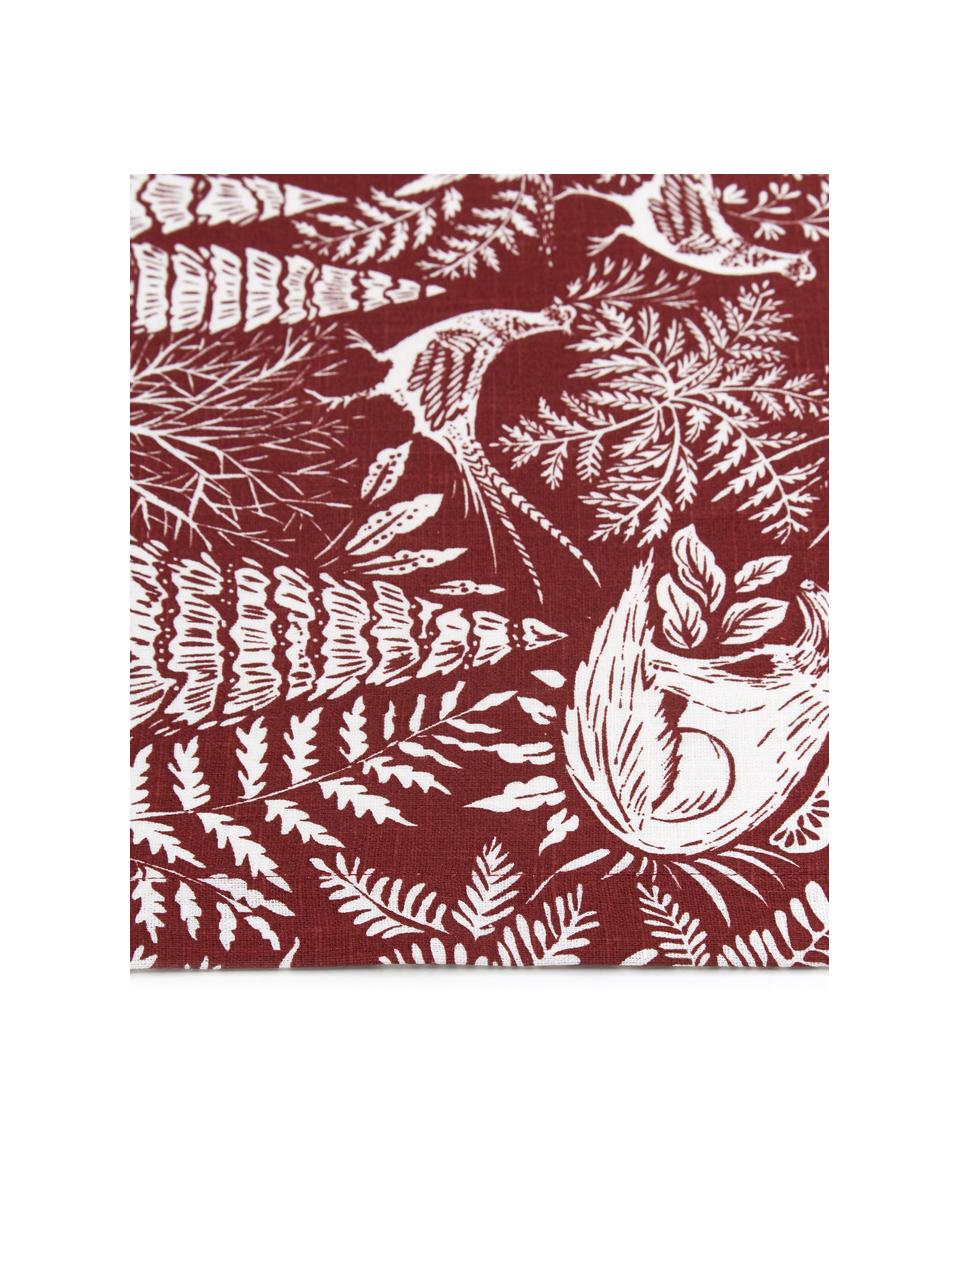 Bieżnik Forest, 85% ramia, 15% bawełna, Czerwony, kremowy, S 40 x D 145 cm